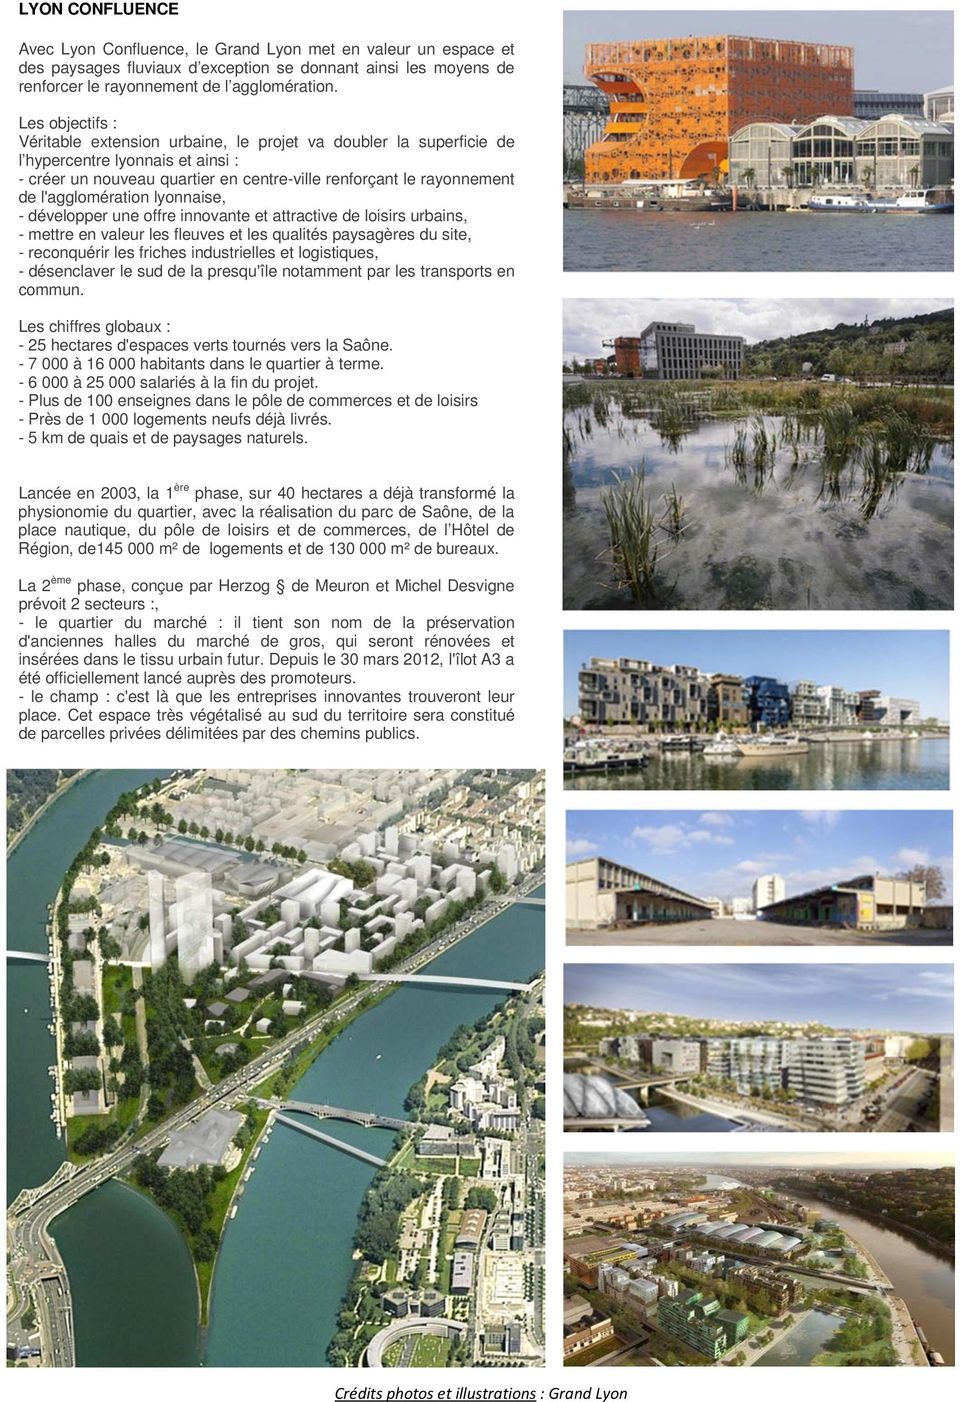 l'agglomération lyonnaise, - développer une offre innovante et attractive de loisirs urbains, - mettre en valeur les fleuves et les qualités paysagères du site, - reconquérir les friches